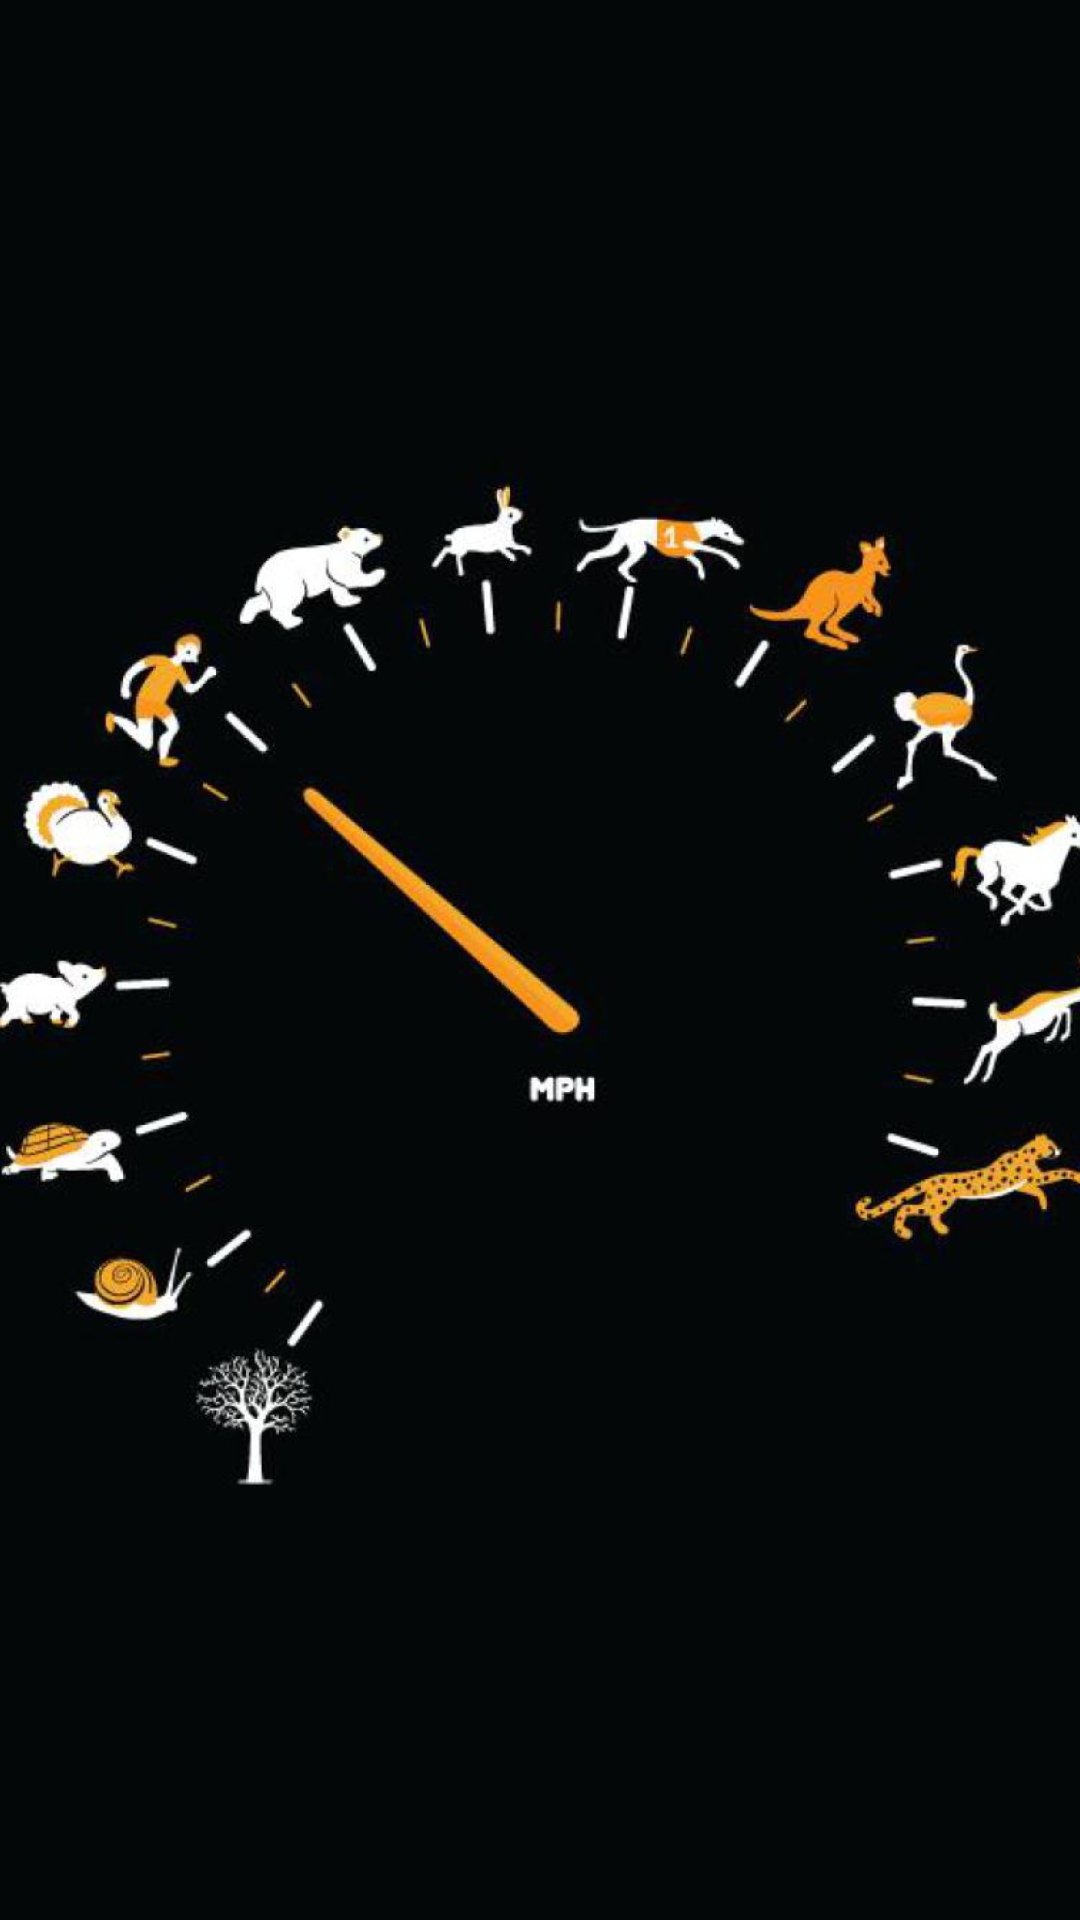 Das Funny Speedometer Mph Wallpaper 1080x1920